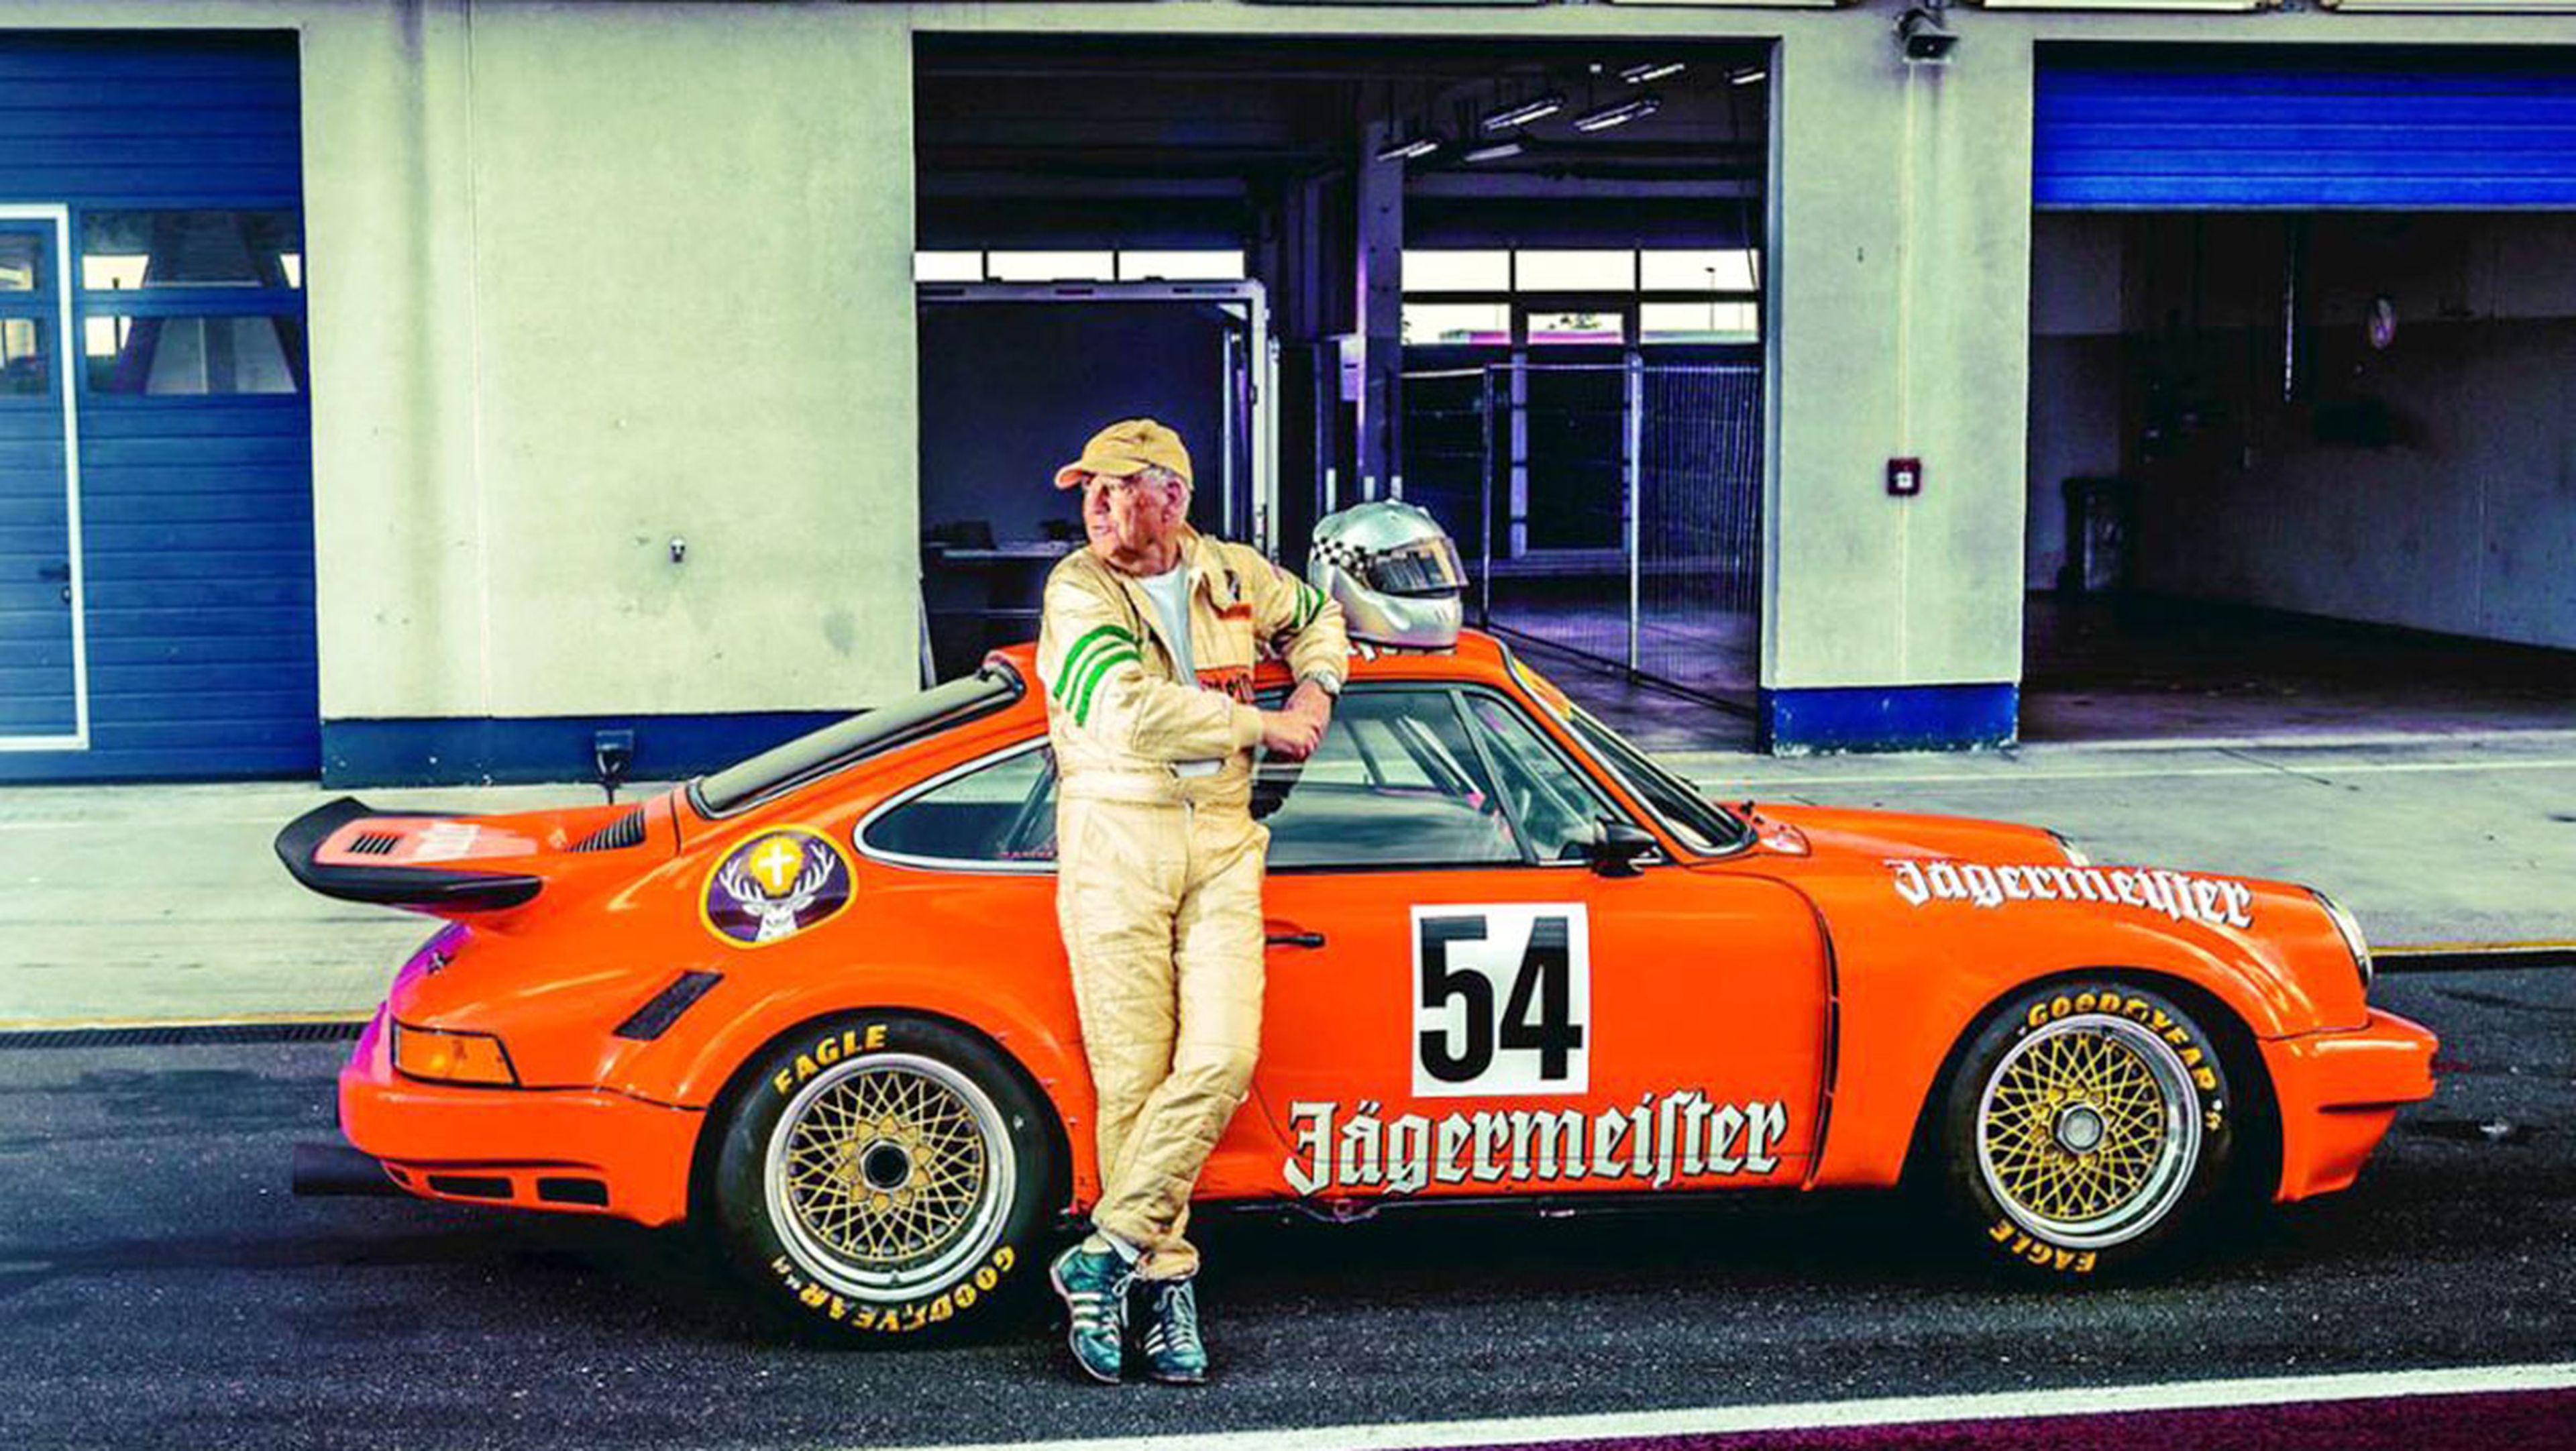 Llega a Europa un Porsche 911 RSR de Jagermeister